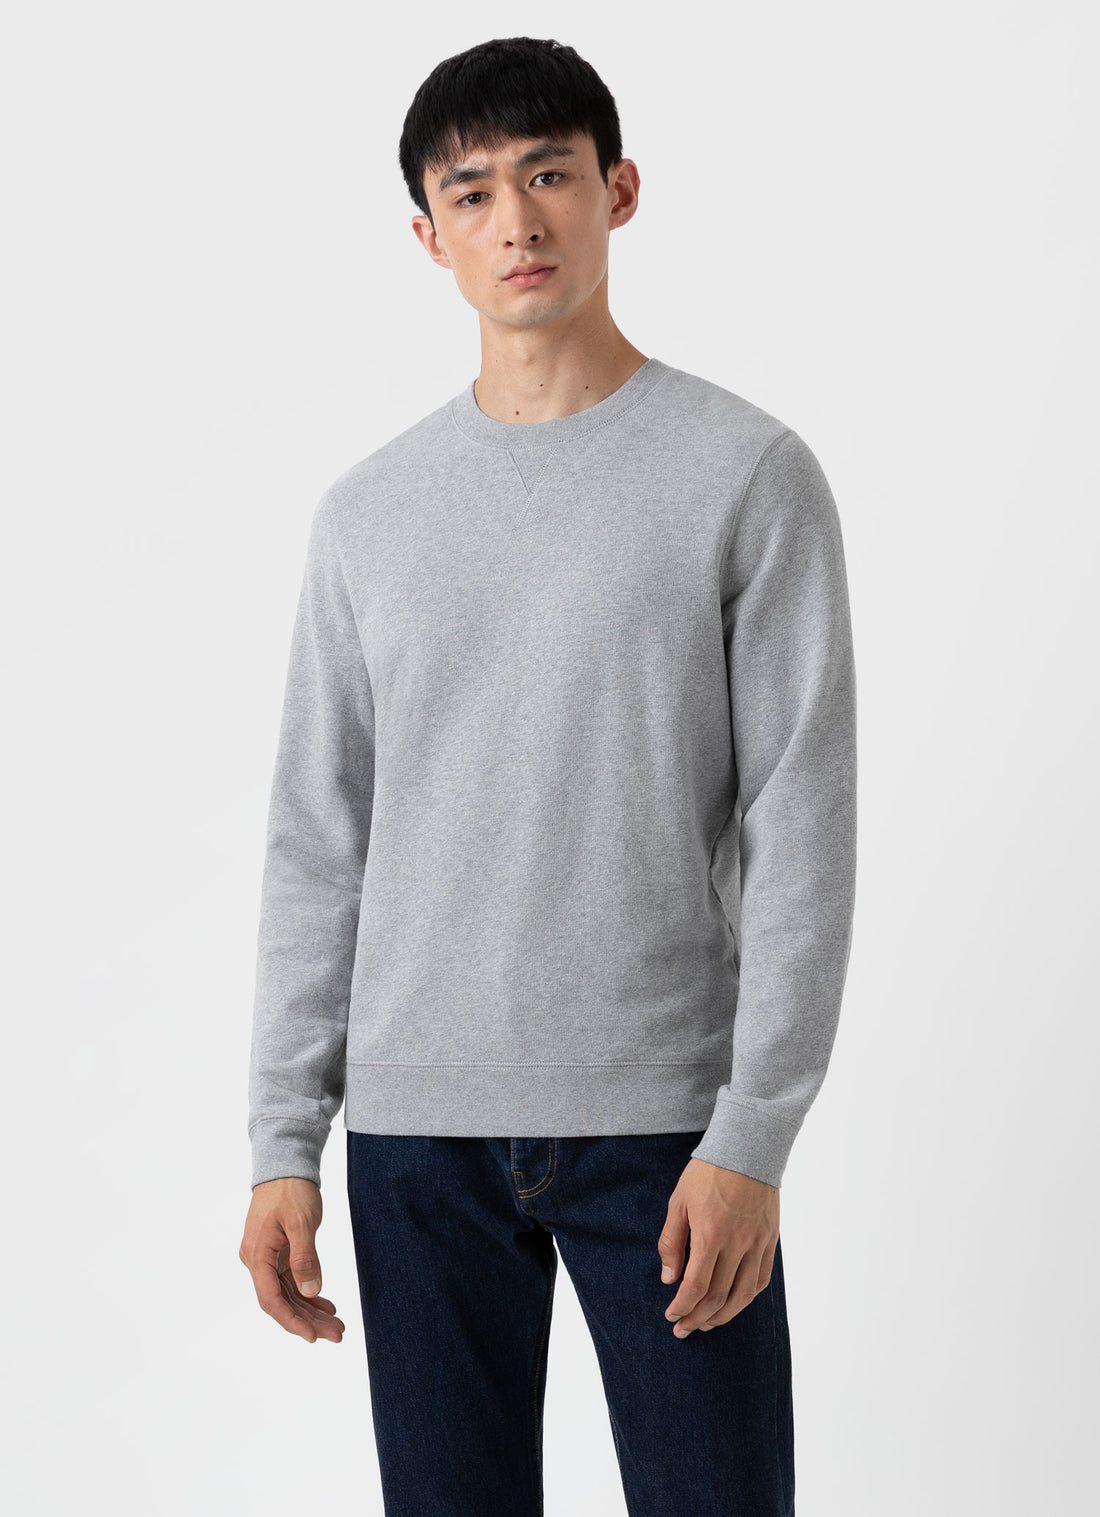 Men's Sweatshirts & Sweatpants | Sunspel